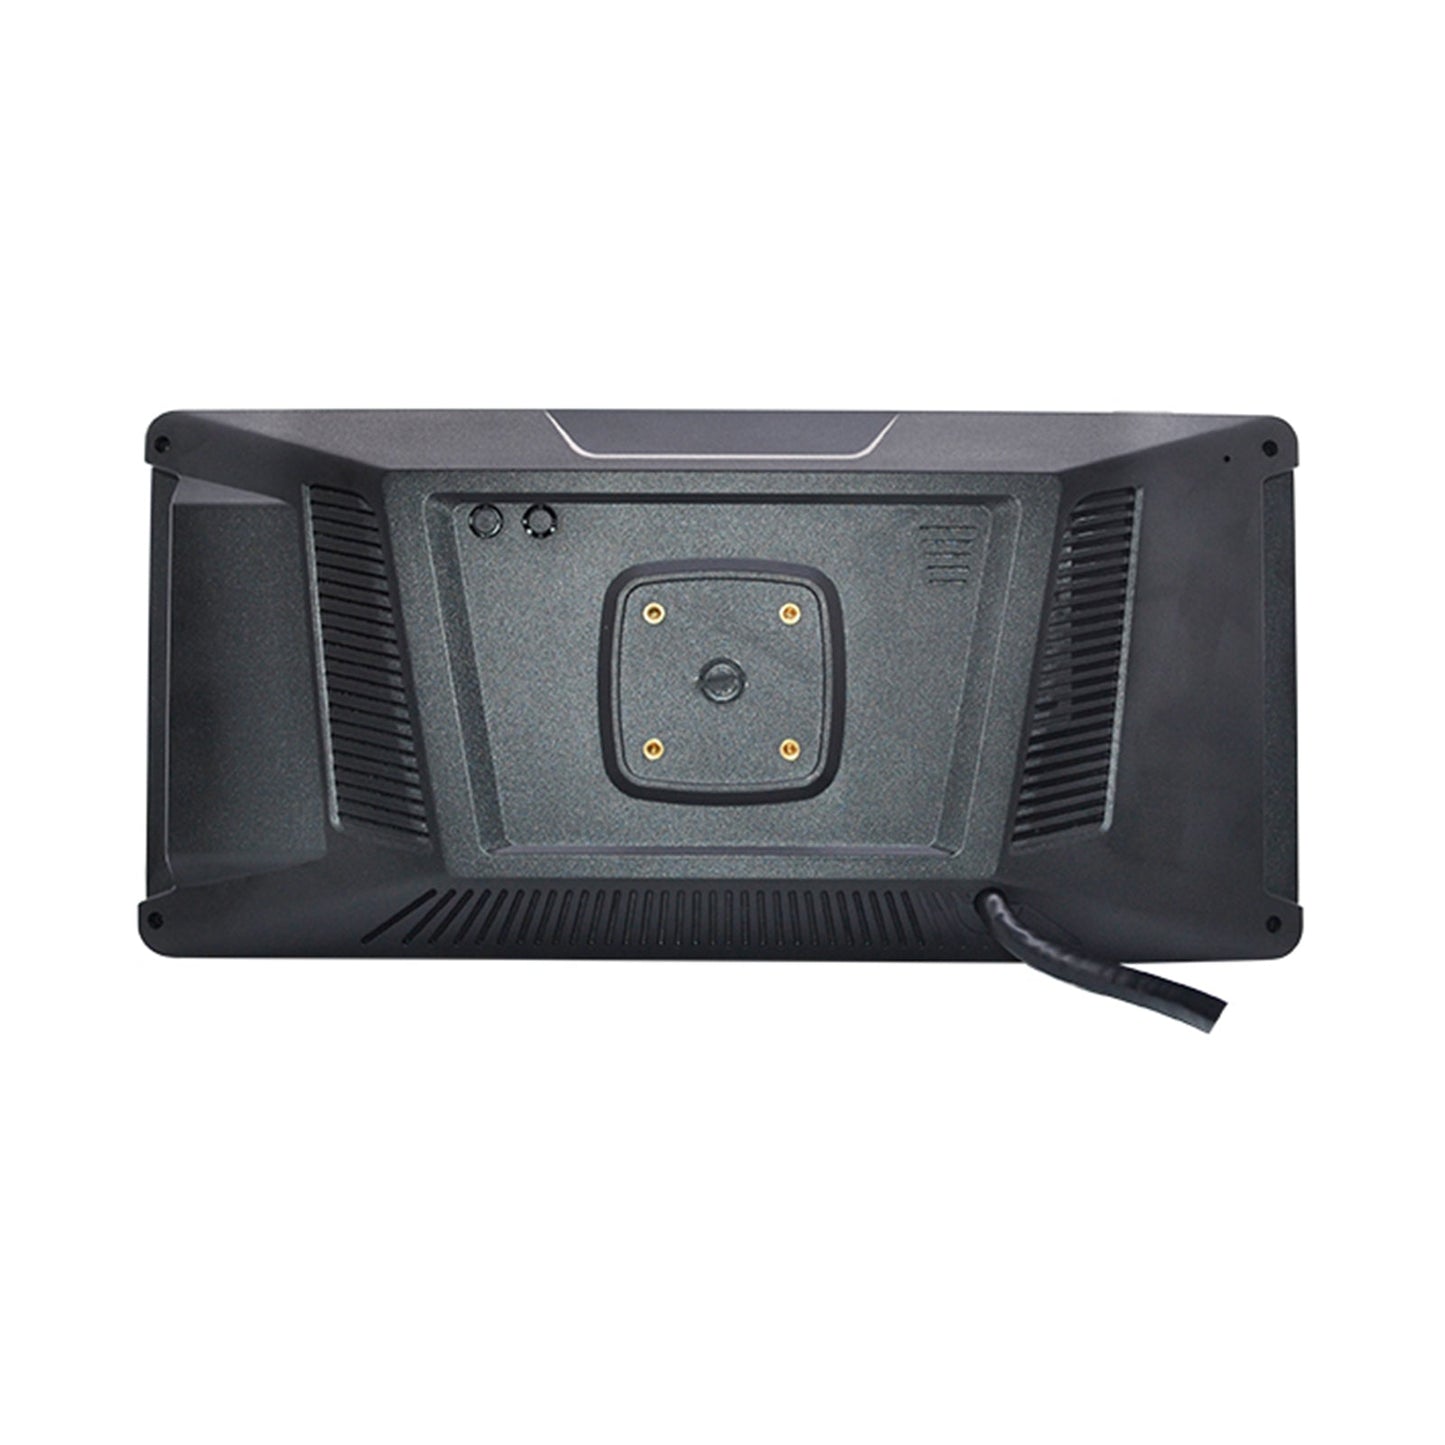 10,36 "Monitor DVR Driving Video Recorder Touchscreen für Wohnmobil-LKW-Bus + 4-teilige Rückfahrkamera Fedex Express